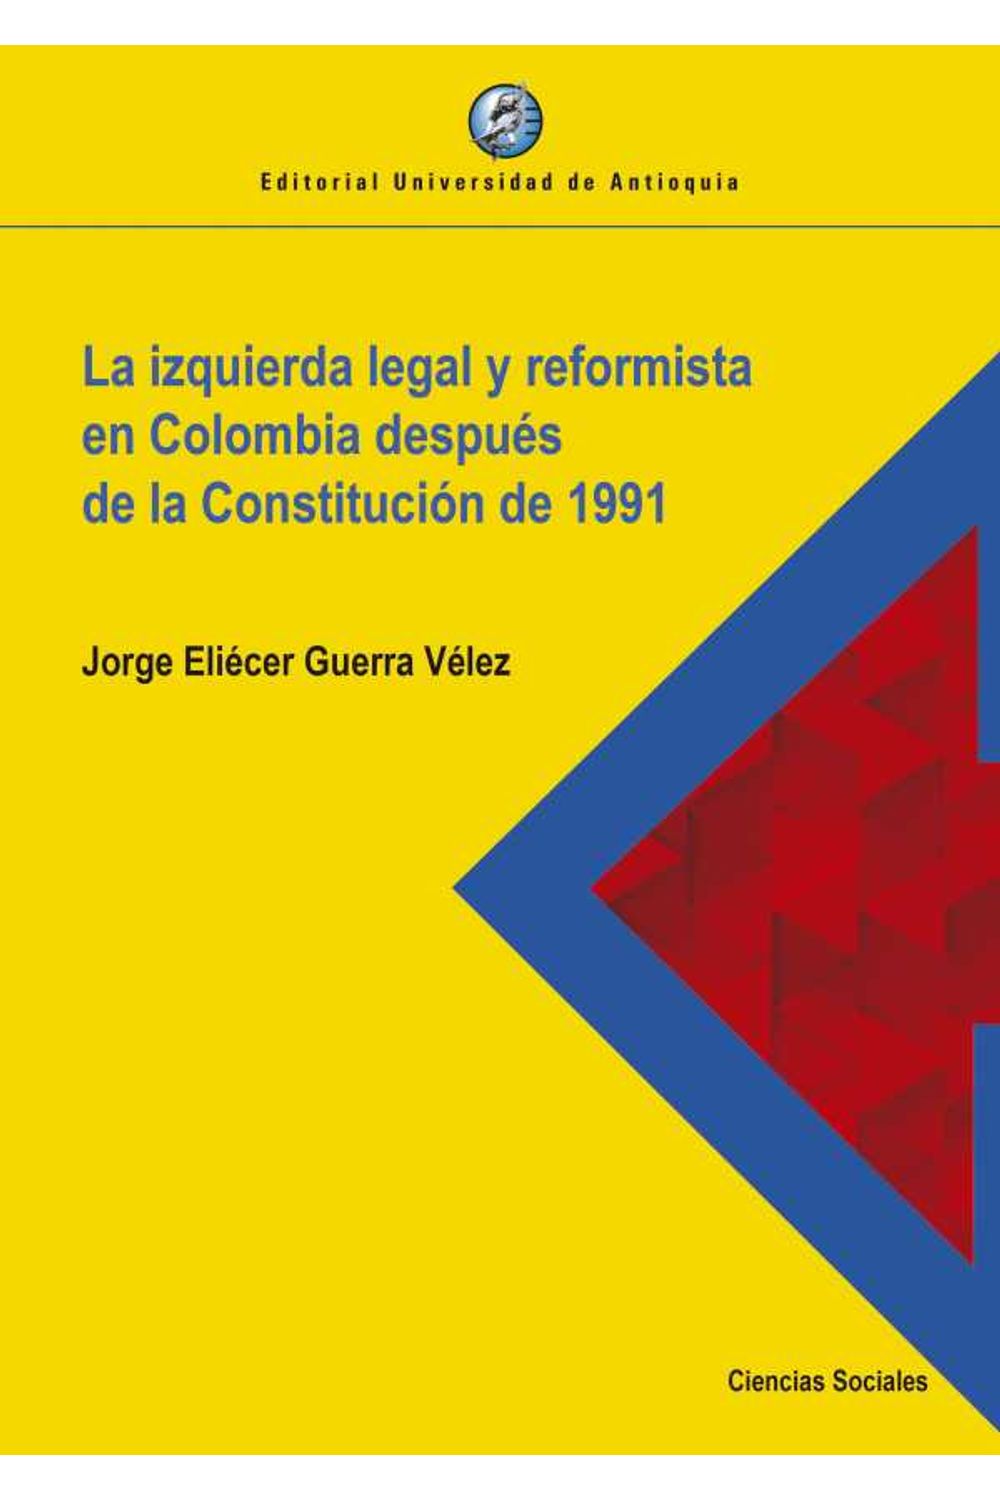 bw-la-izquierda-legal-y-reformista-en-colombia-despueacutes-de-la-constitucioacuten-de-1991-u-de-antioquia-9789587149500